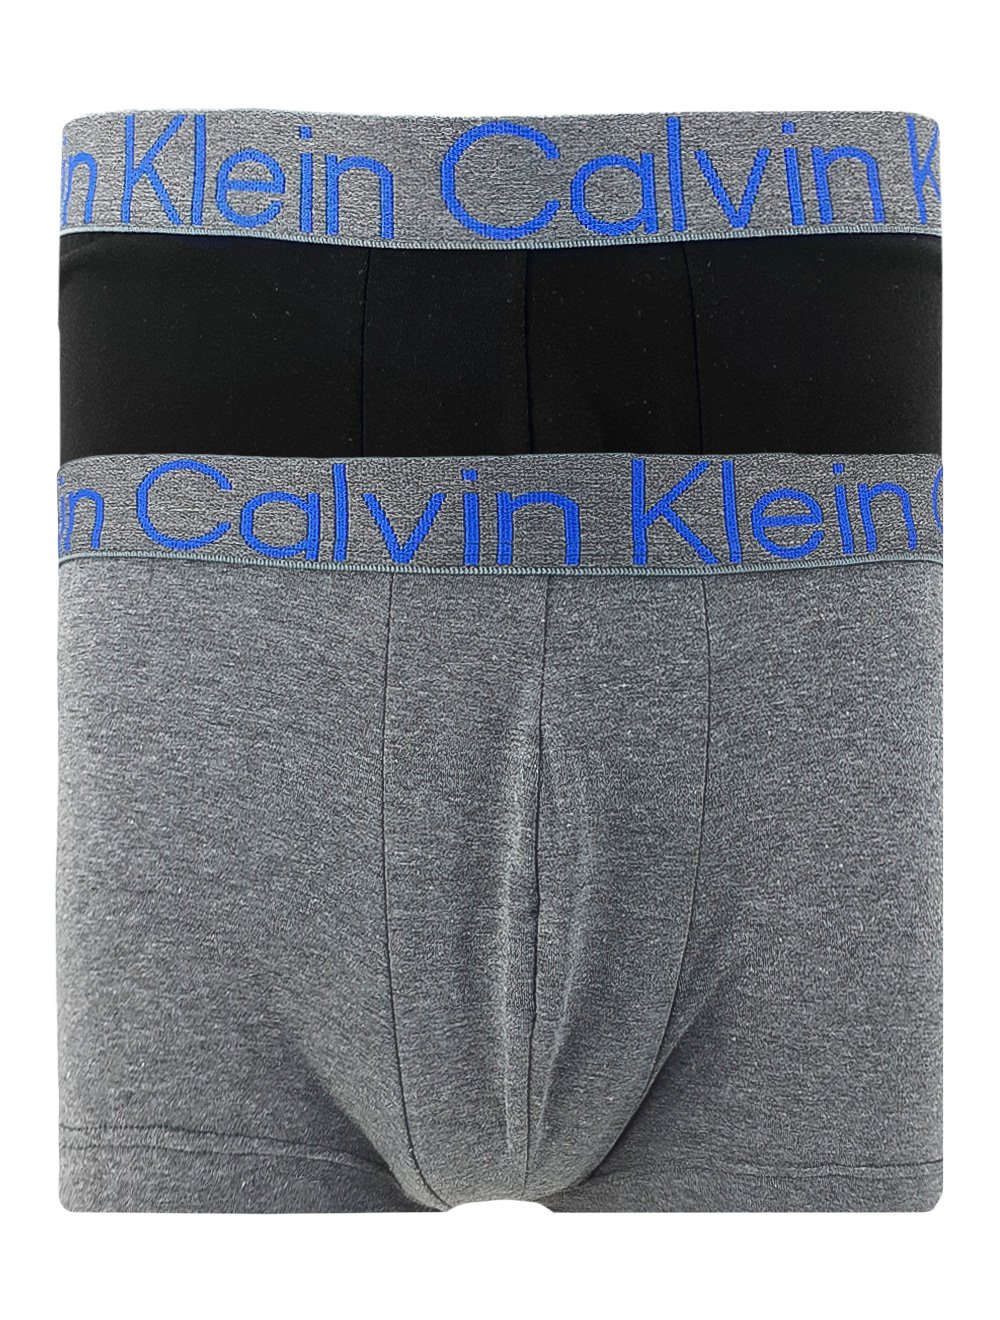 Cueca Calvin Klein Low Rise Trunk Preta/Cinza Pack 2UN